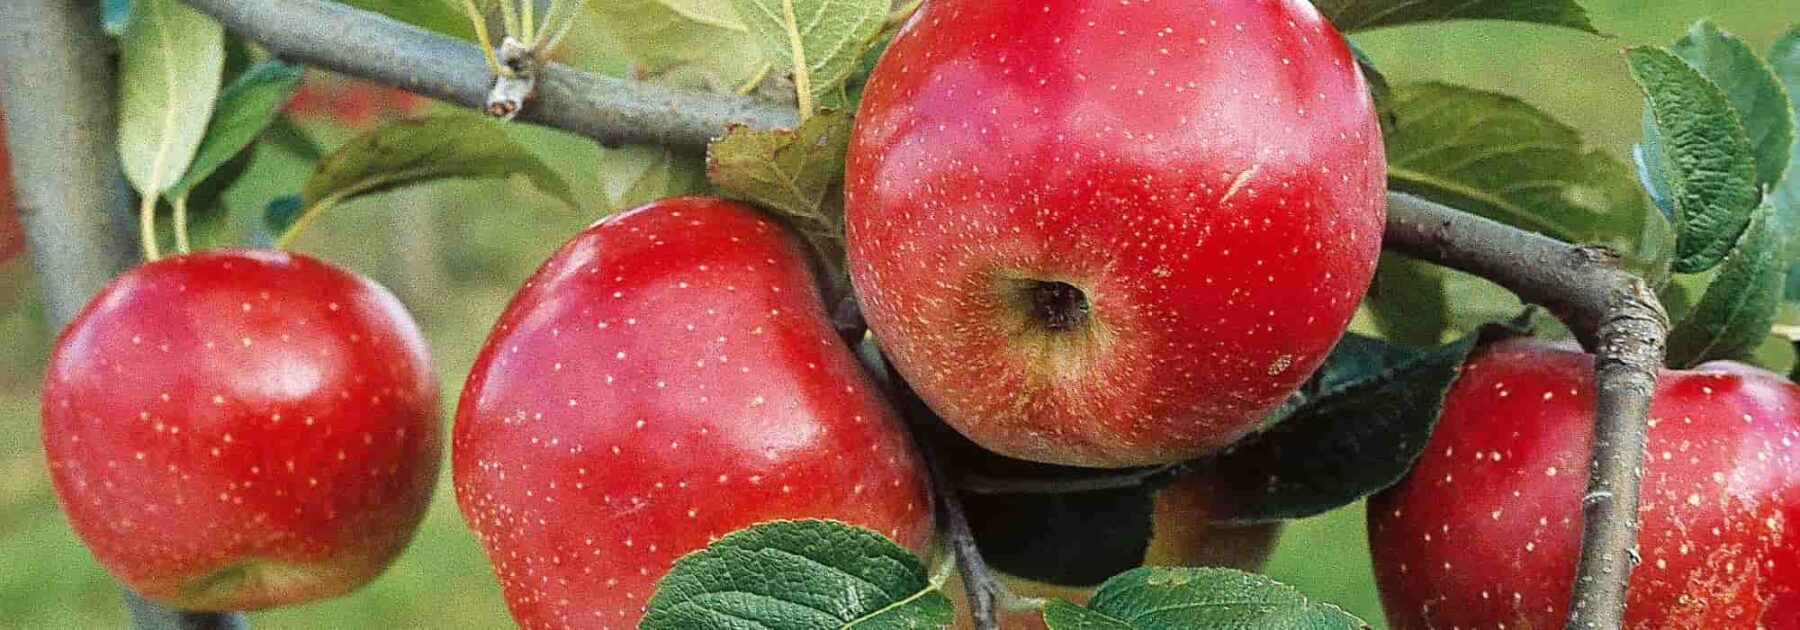 Macieira: como escolher a variedade certa?